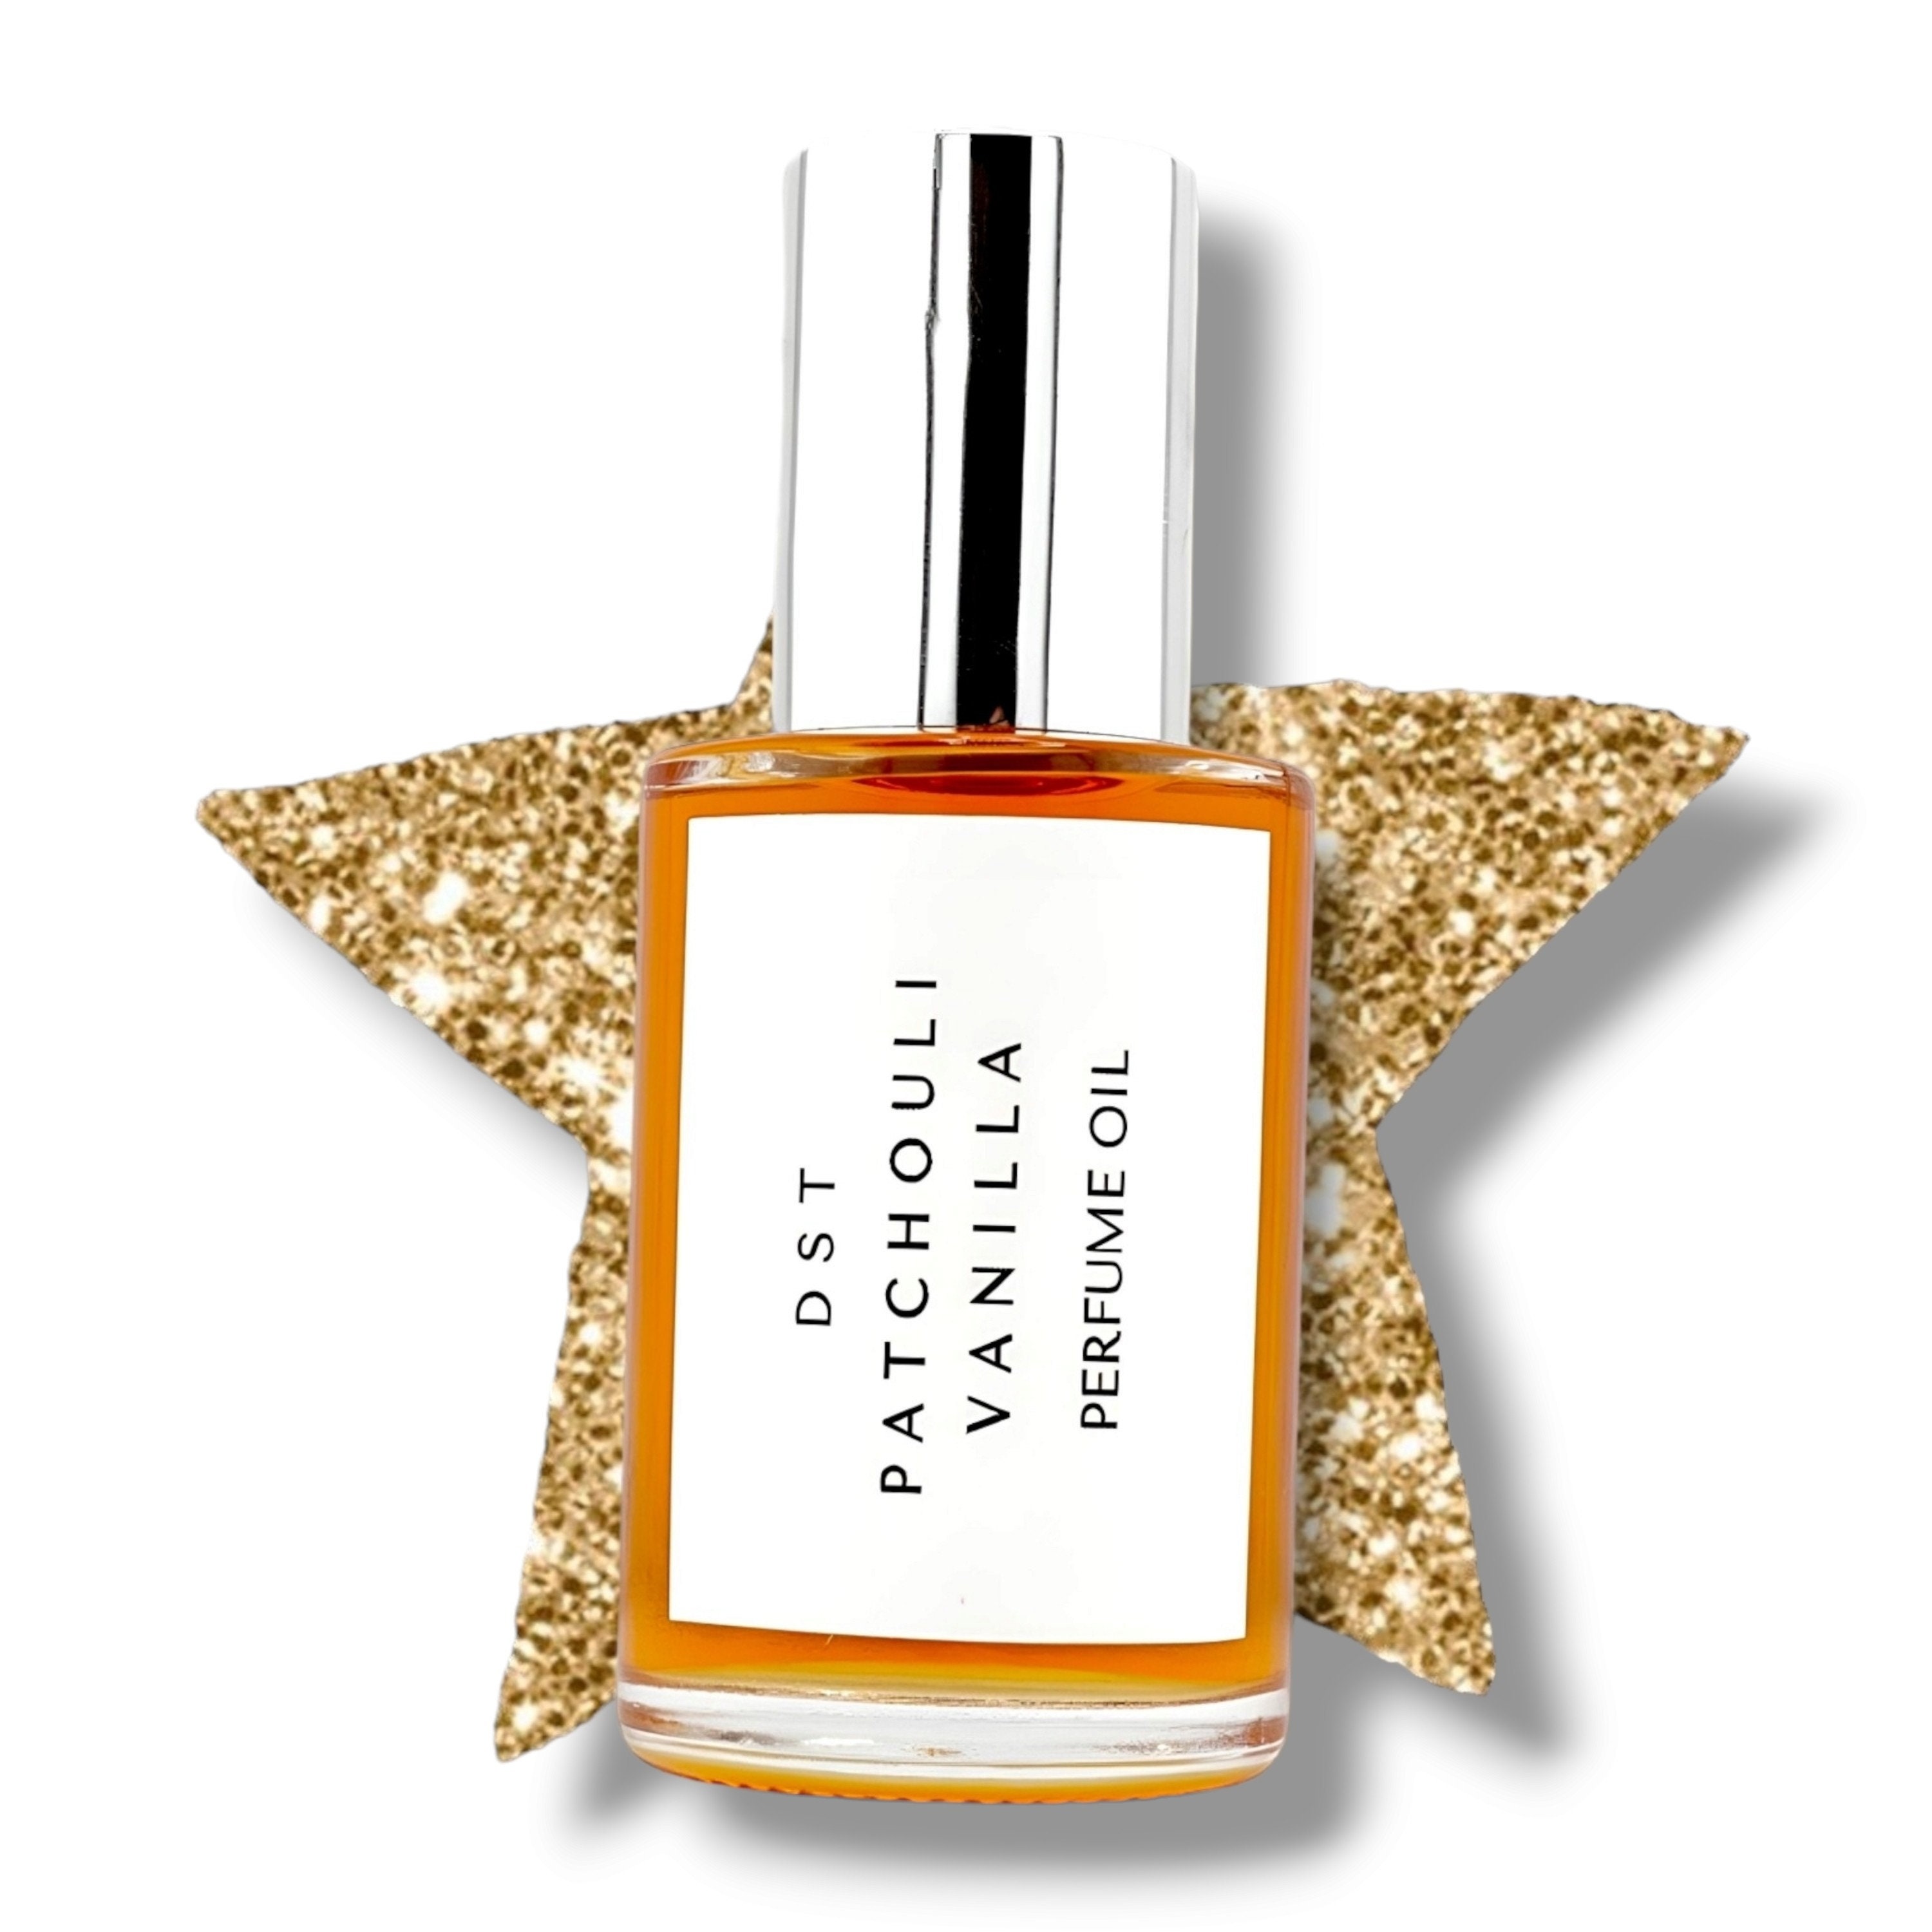 Patchouli Vanilla Serenade Eau de parfum made with essential oils